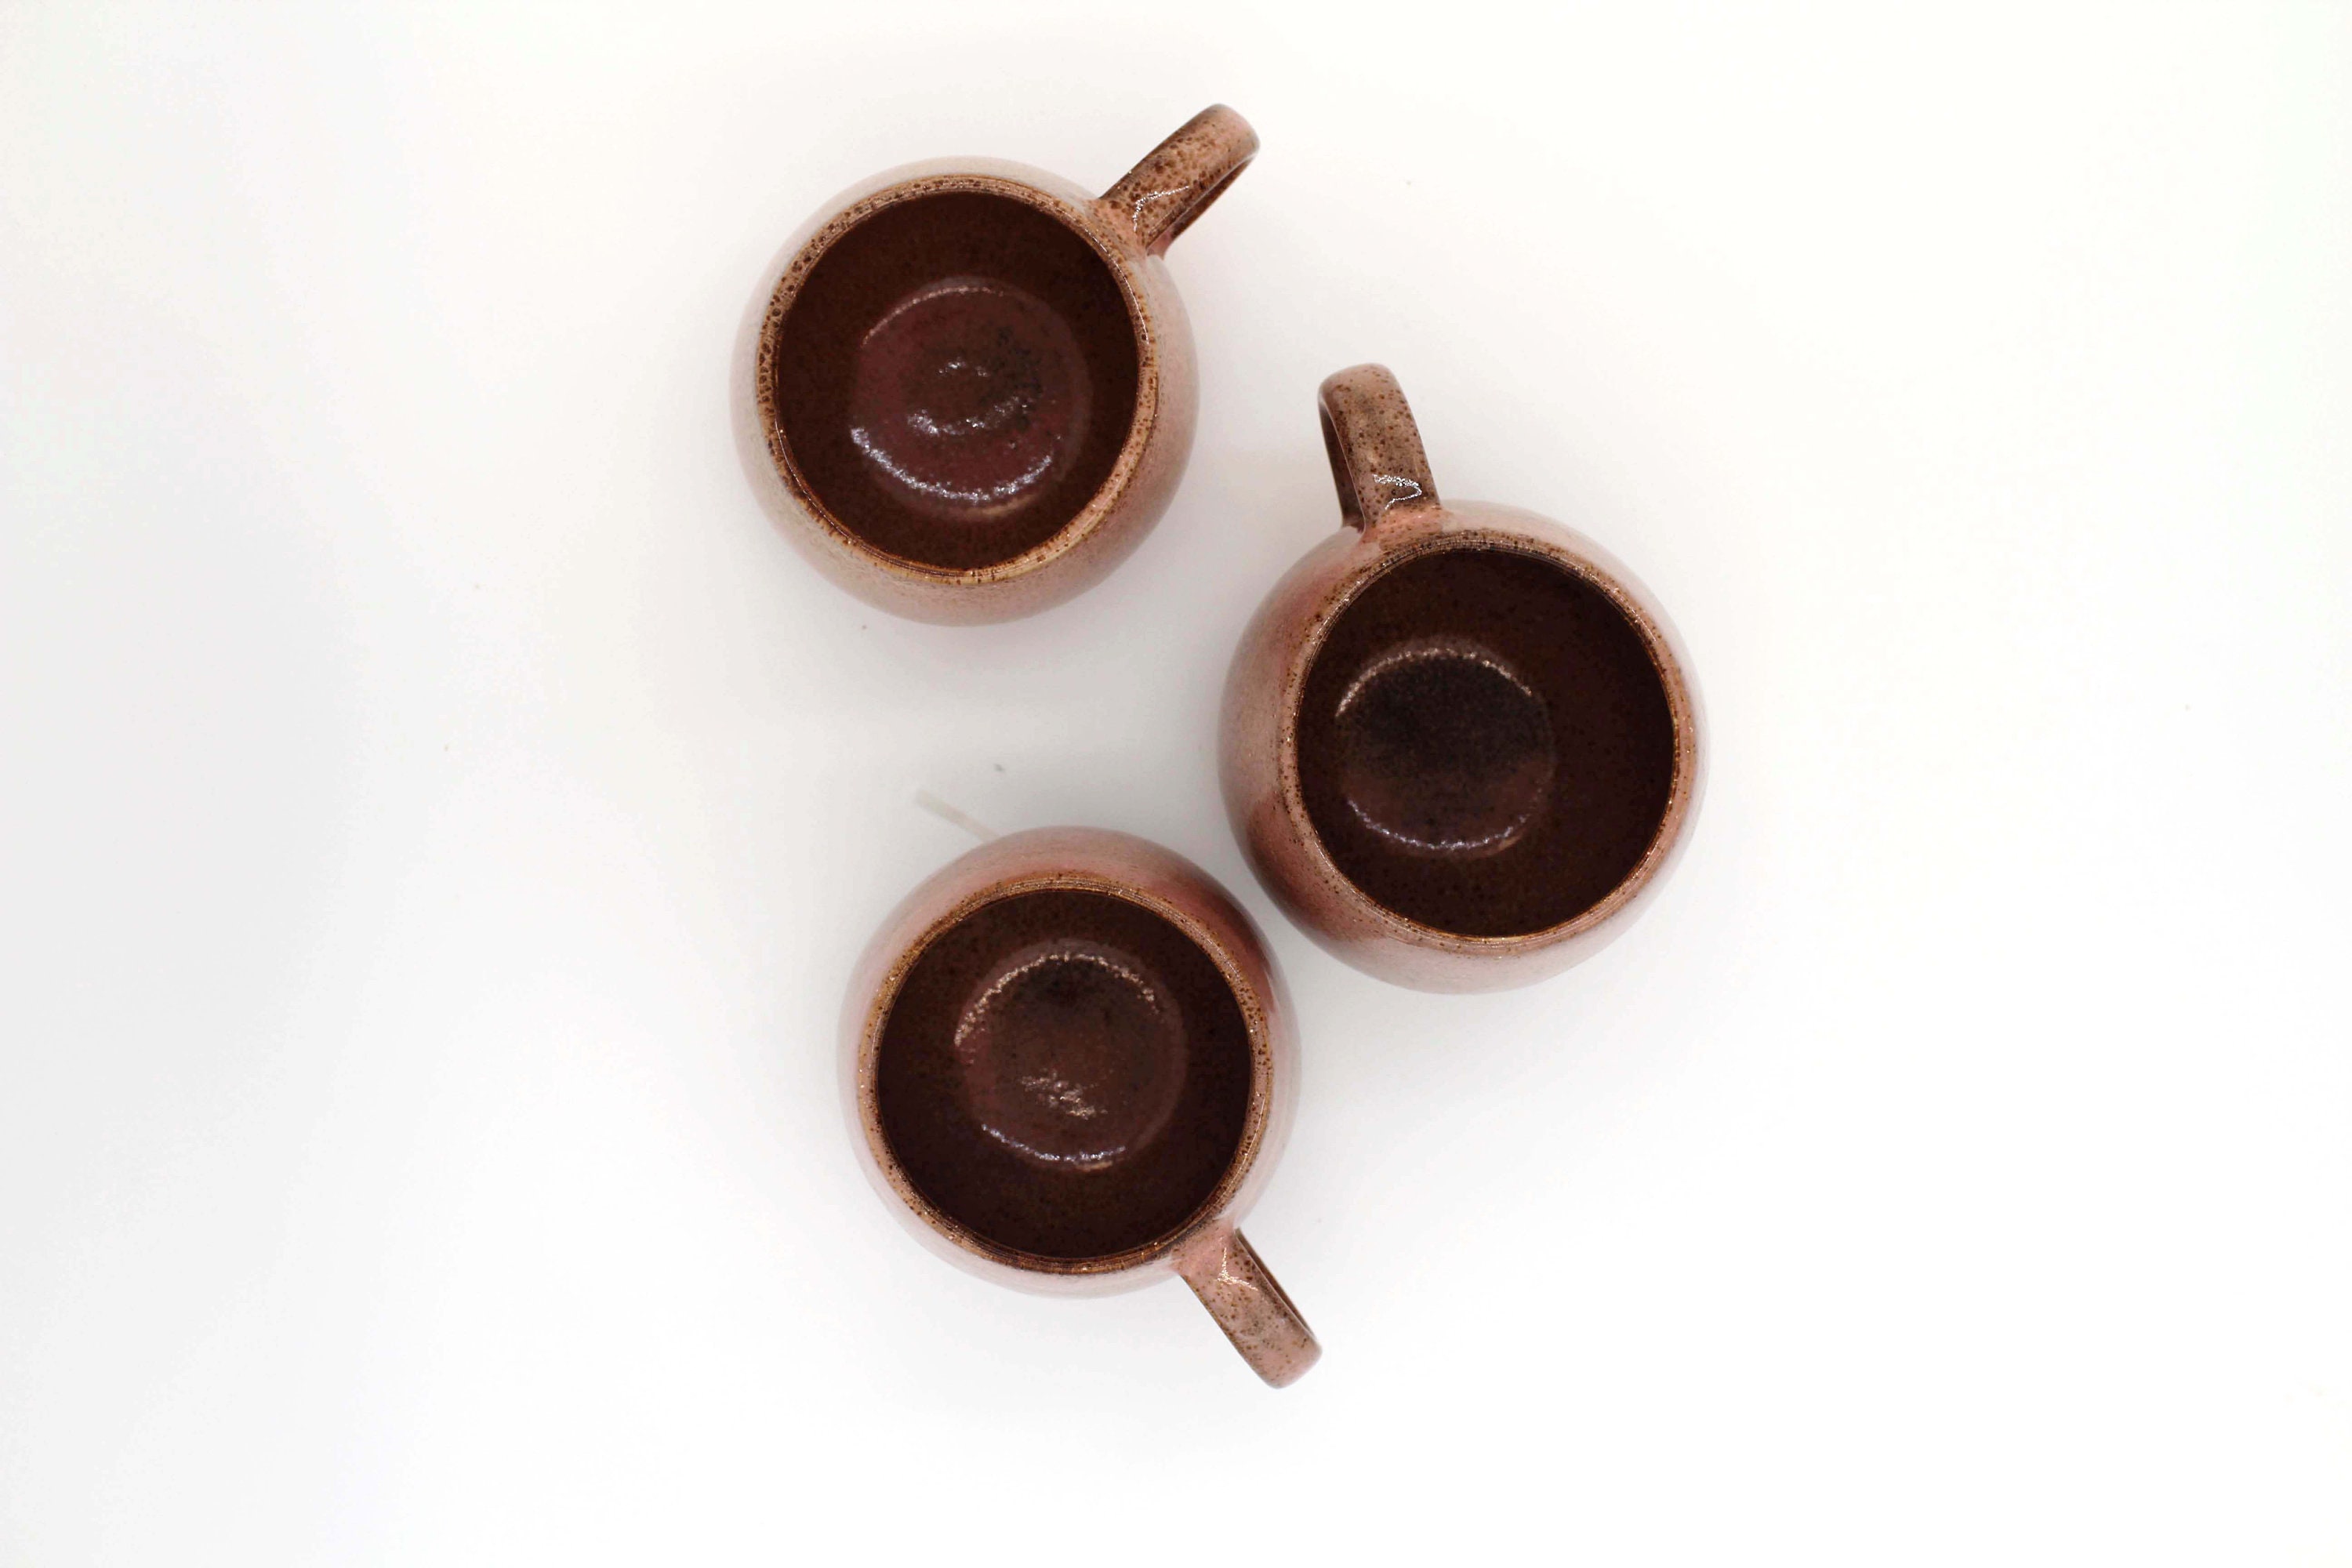 Mora Ceramic Cup Ceramic Cup Mug Large Tea Cup Ceramic Cup Handmade Ceramic  